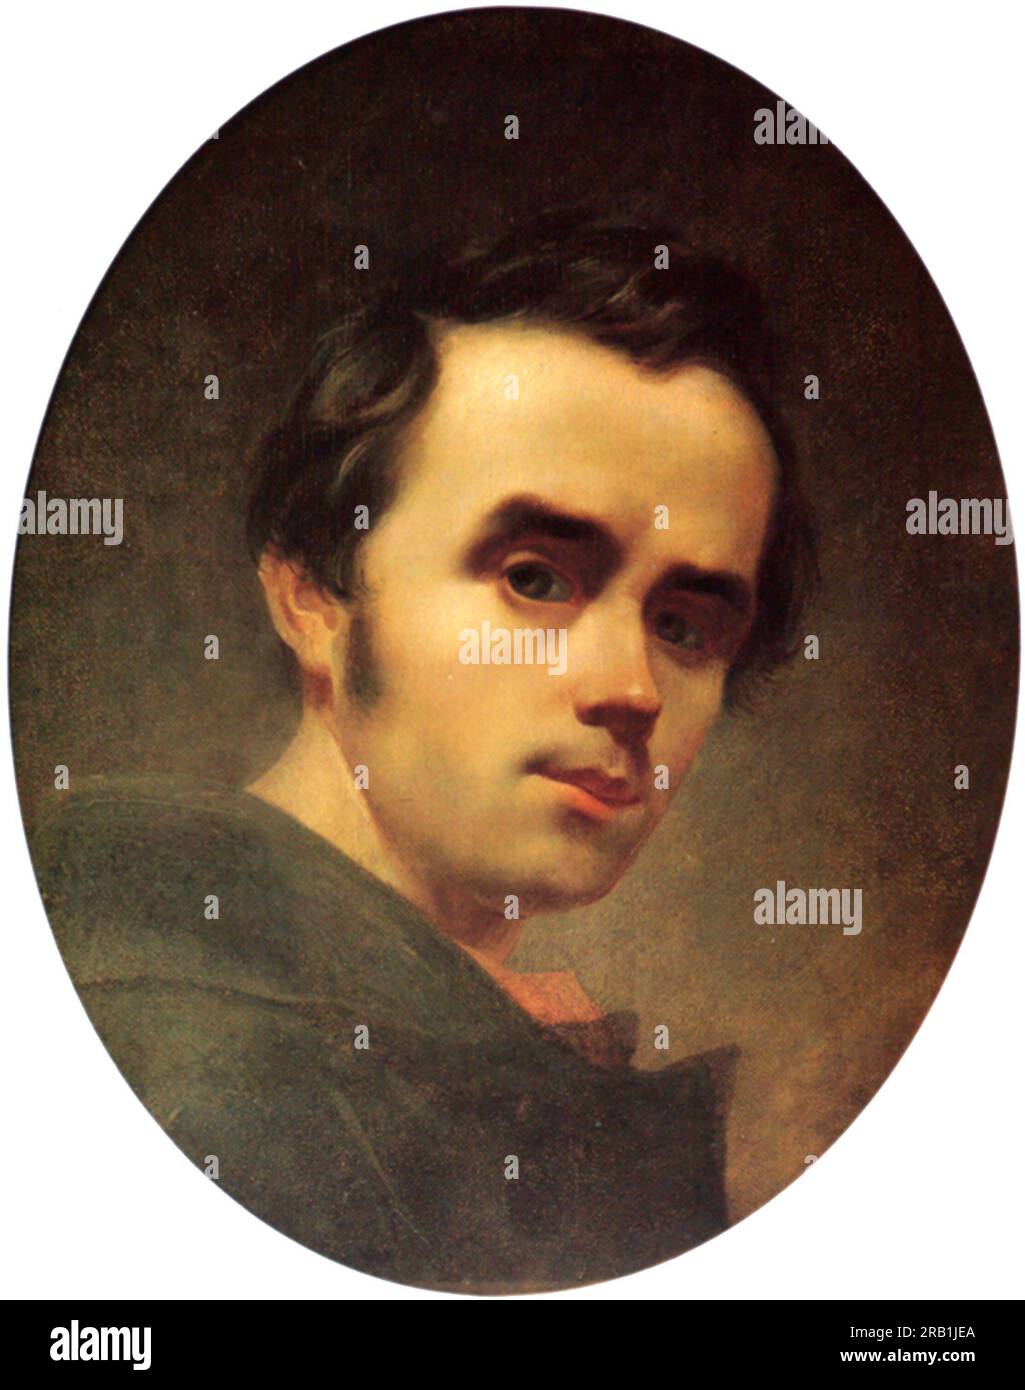 Taras Hryhorovych Shevchenko, (1814 – 1861), connu sous le nom de Kobzar Taras, ou Kobzar, poète ukrainien, écrivain, artiste et romancier russe, autoportrait, 1840 Banque D'Images